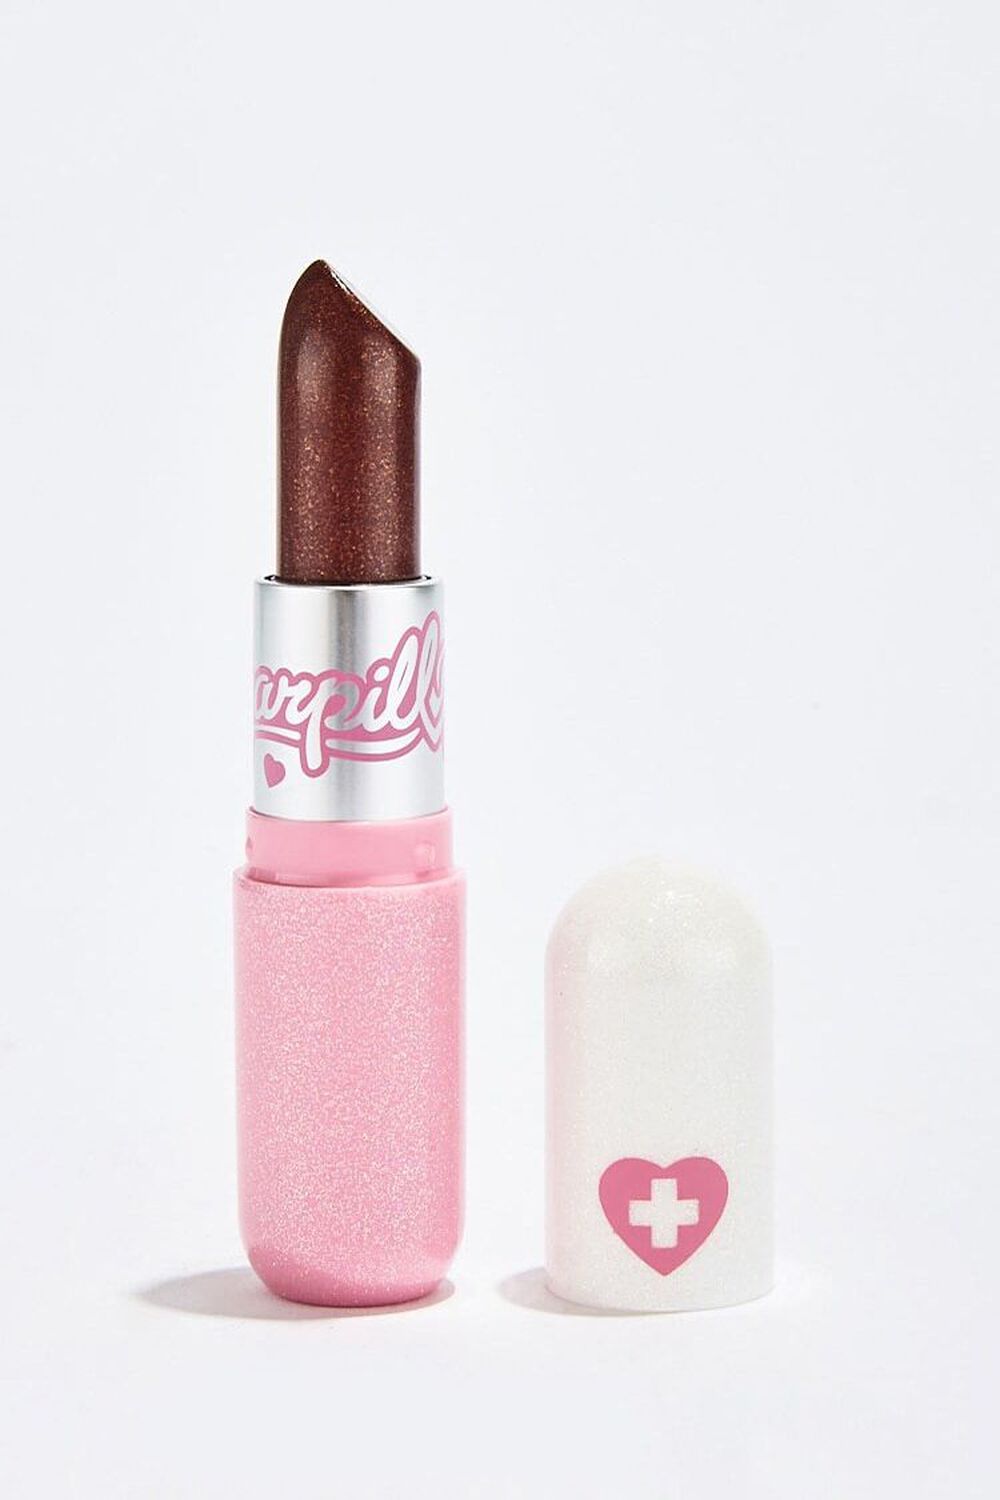 GRAVITY Sugarpill Metallic & Sparkle Pretty Poison Lipstick, image 1